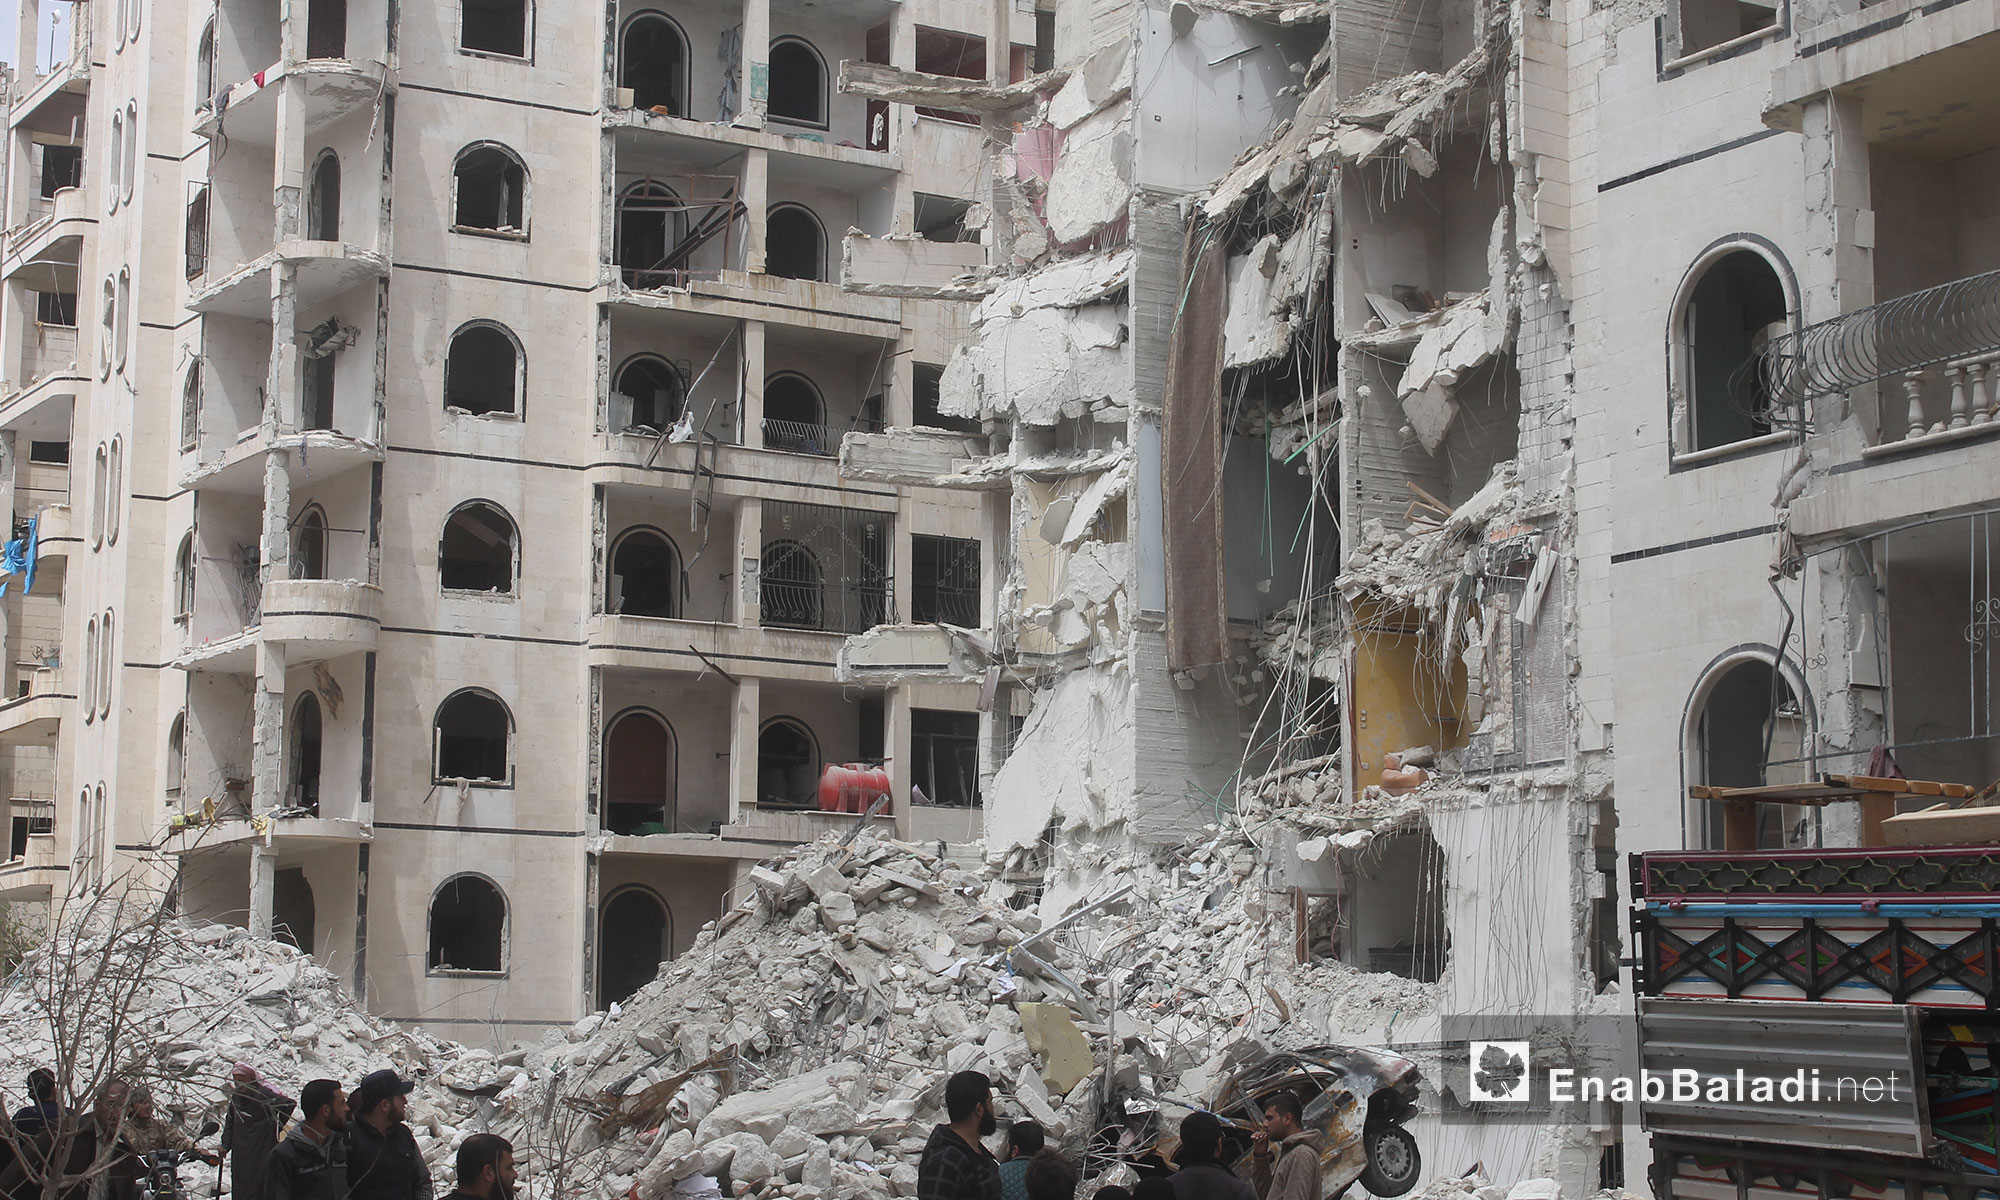 آثار الدمار الذي خلفه انفجار في مدينة إدلب - 9 نيسان 2018 (عنب بلدي)آثار الدمار الذي خلفه انفجار في مدينة إدلب - 9 نيسان 2018 (عنب بلدي)